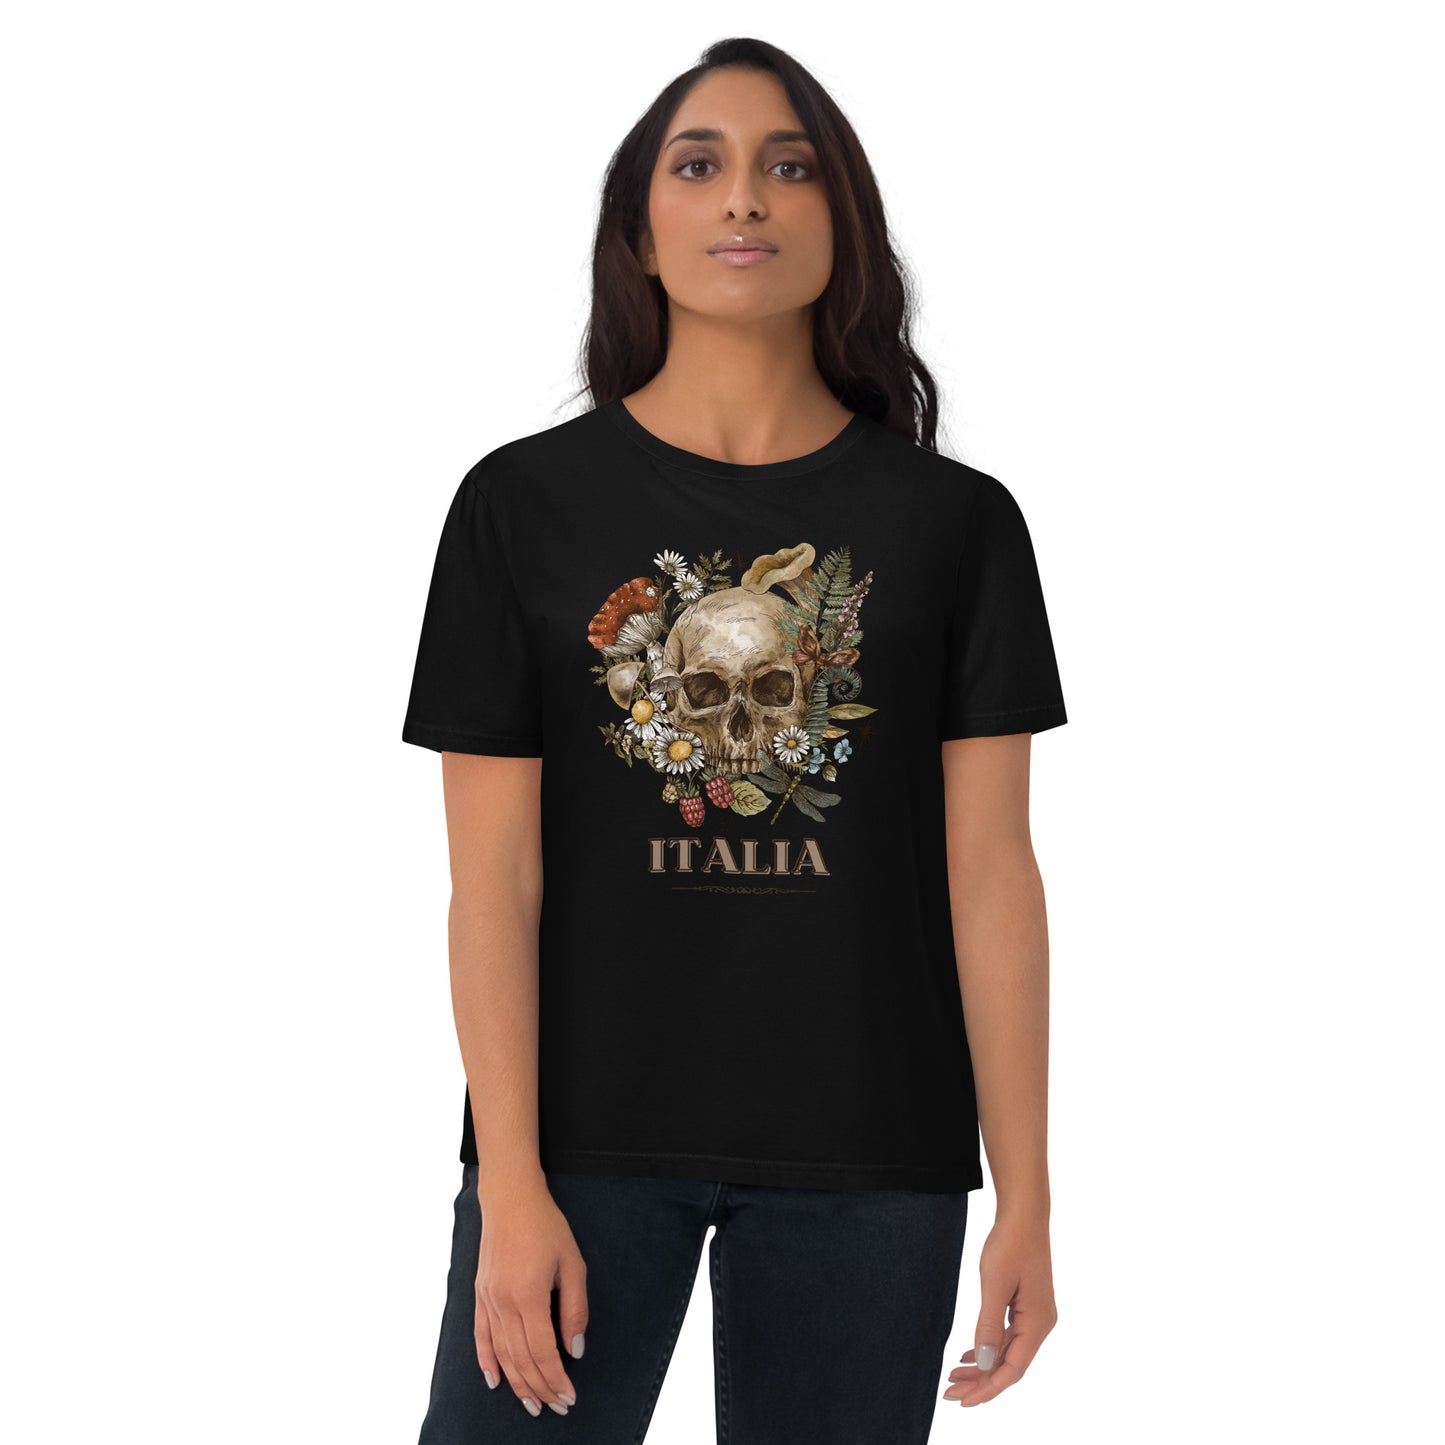 Unisex-Bio-Baumwoll-T-Shirt ITALIA